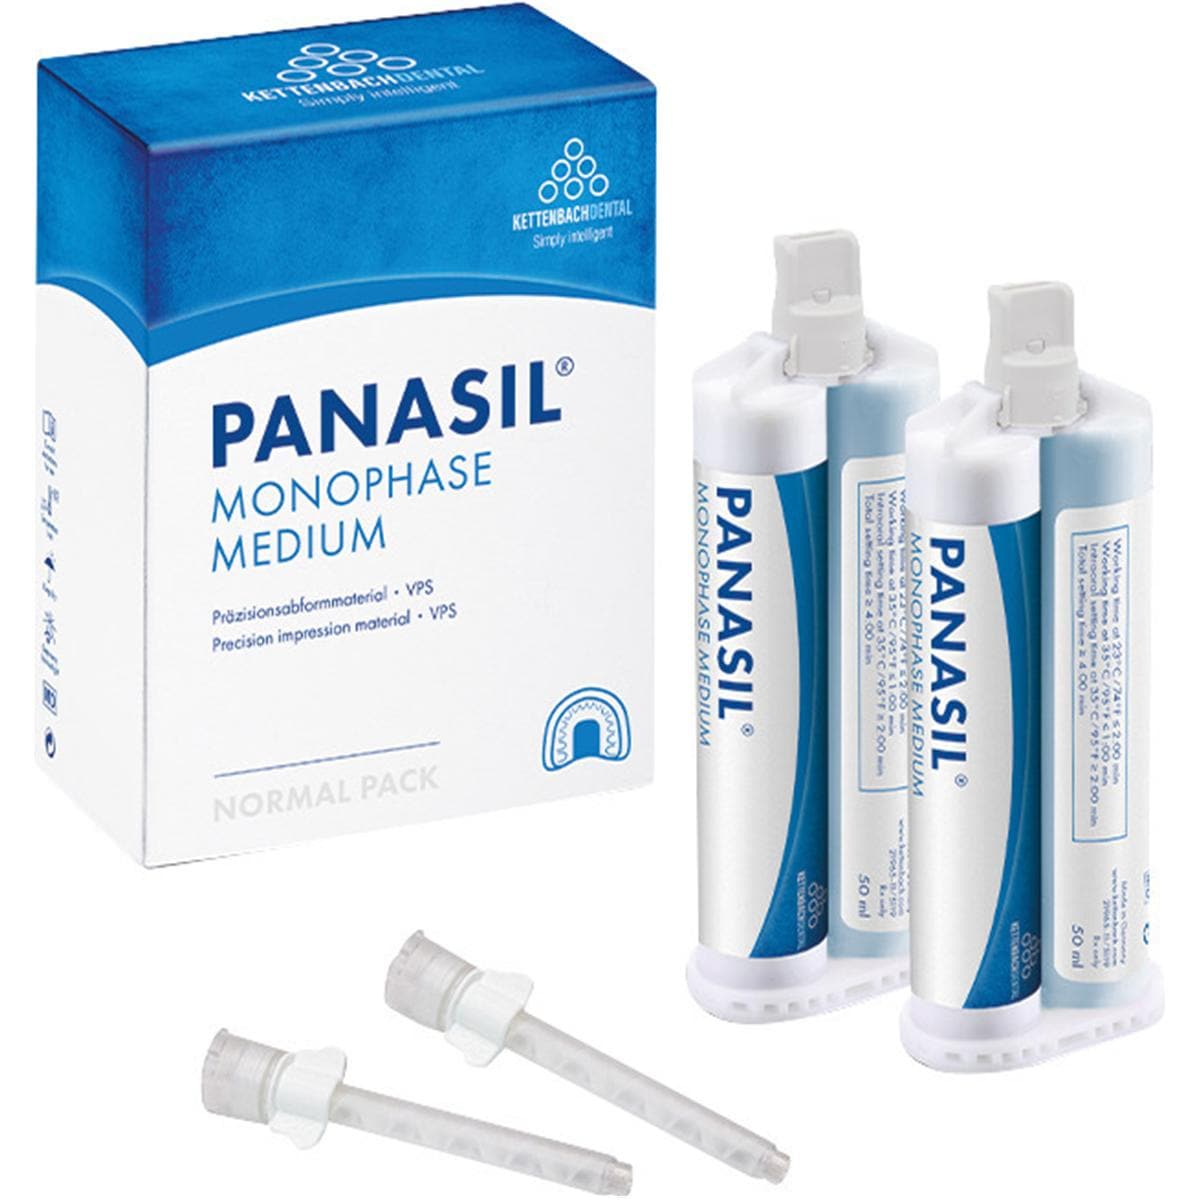 Panasil® monophase Medium Kartusche - Kartuschen 2 x 50 ml